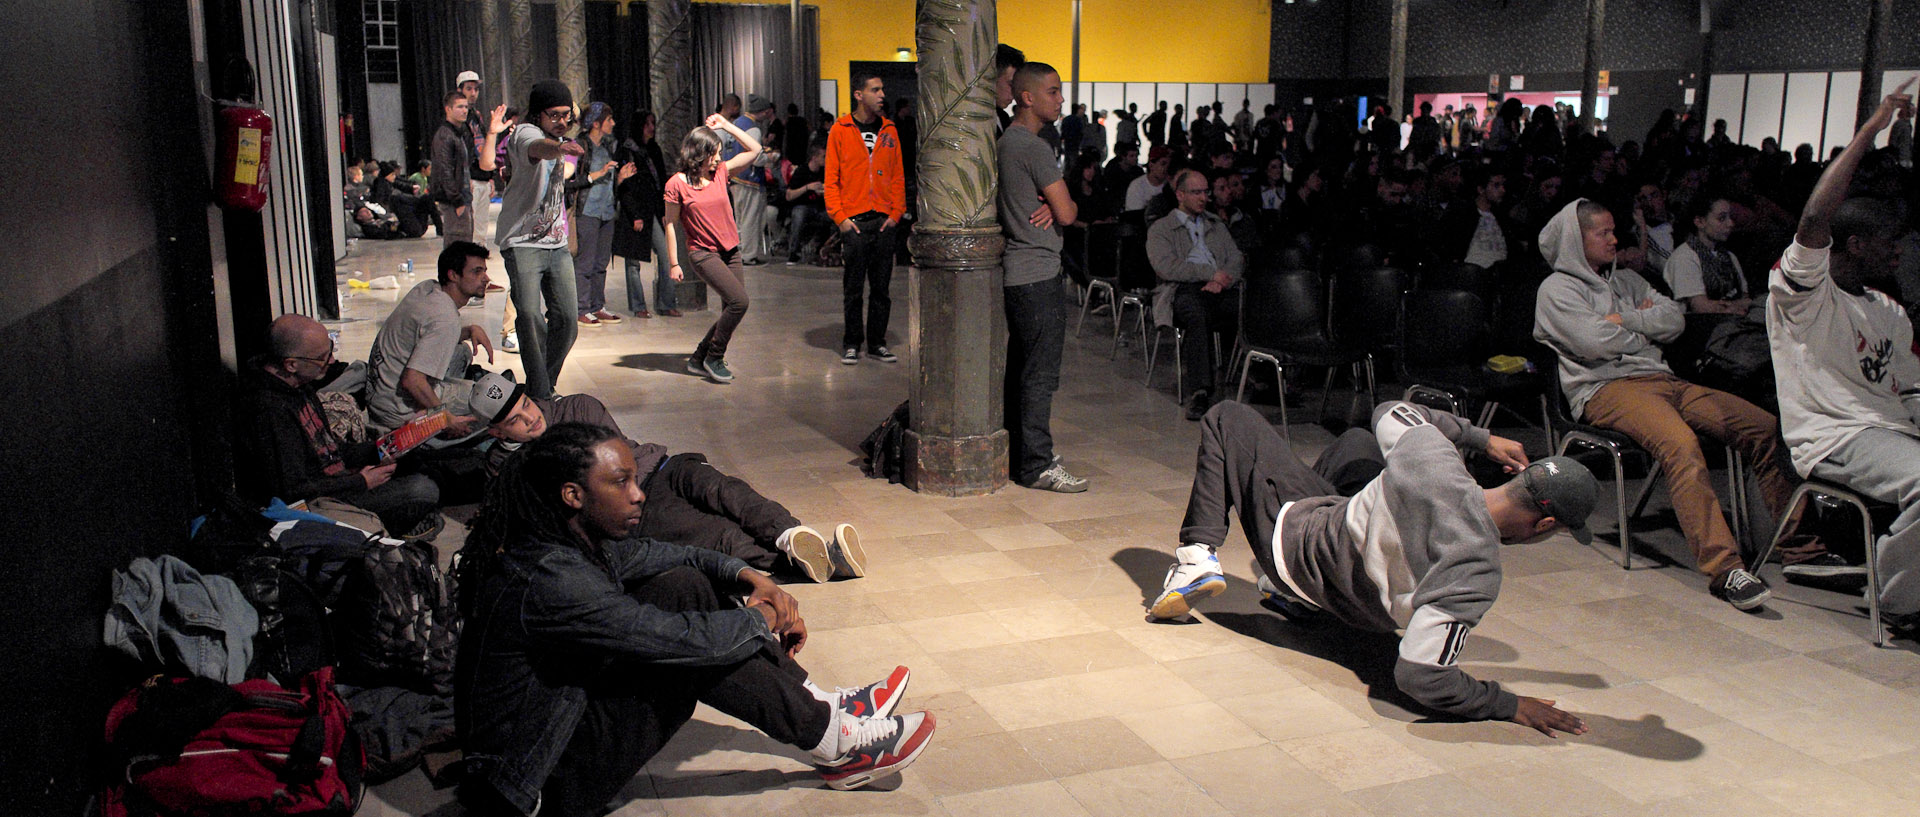 Jeunes dansant dans la salle, pendant un battle de hip hop, salle Watremez, à Roubaix.